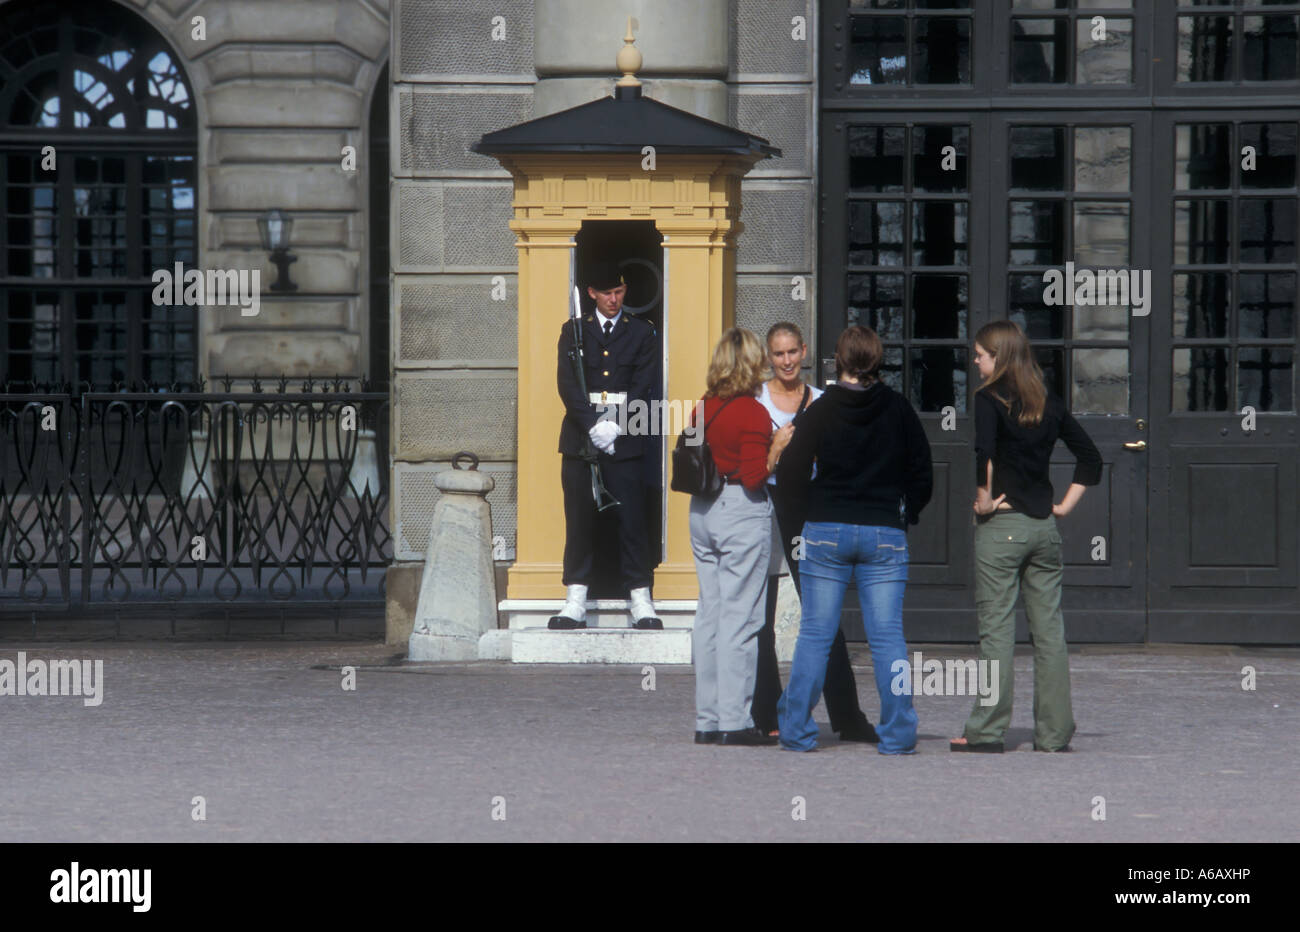 Gruppe von Touristen vor Guard, Königspalast, Stockholm, Schweden Stockfoto